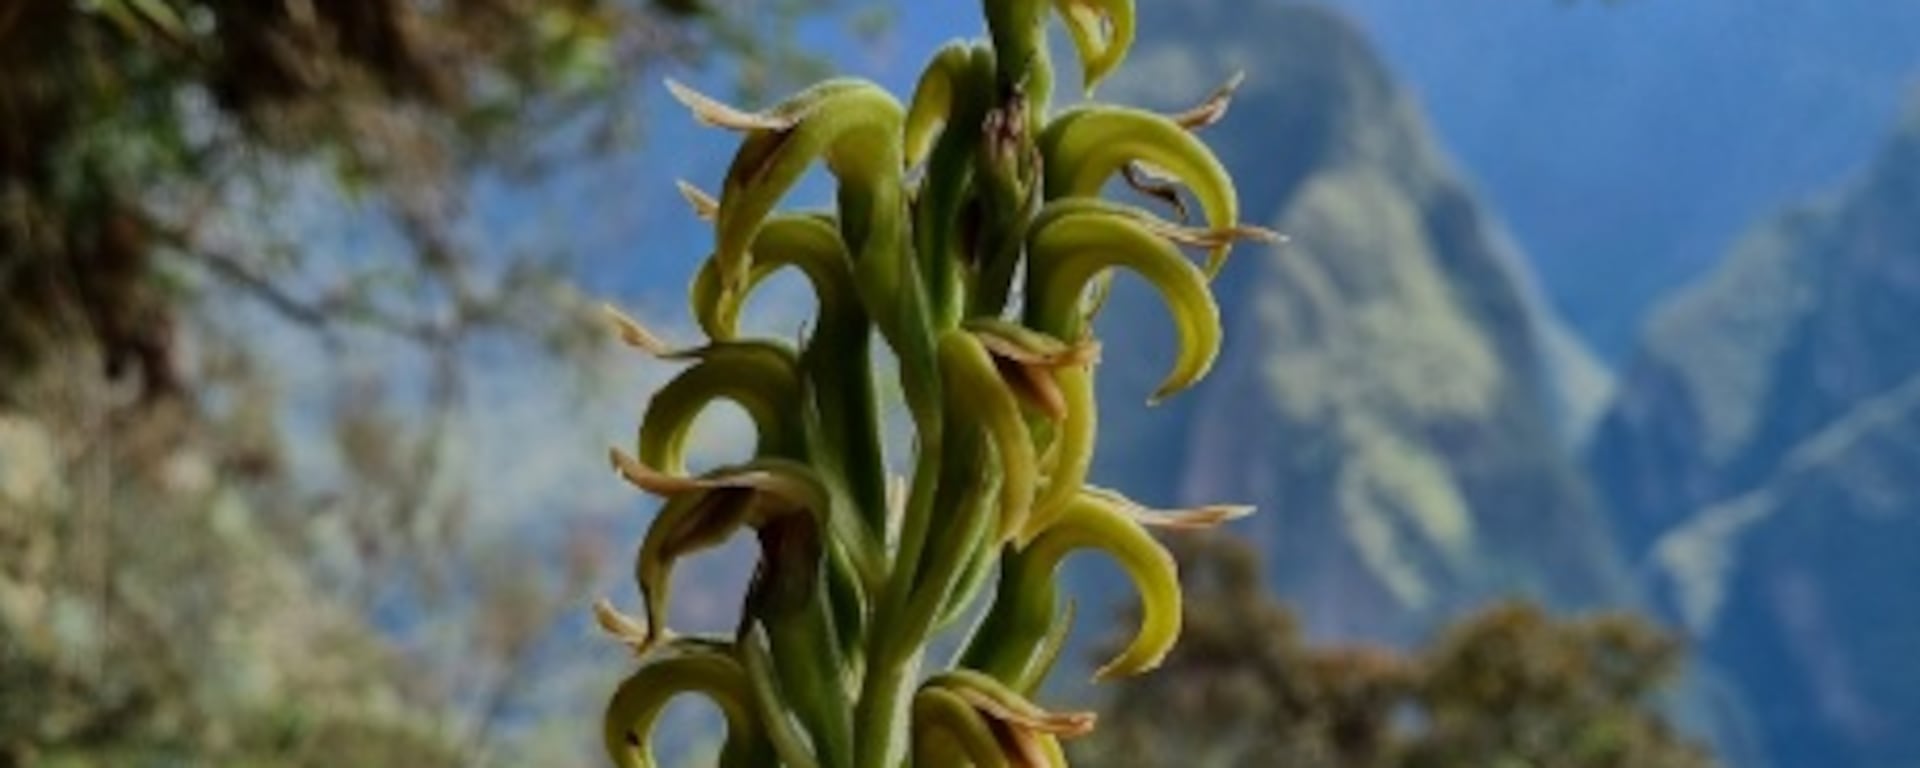 Las milenarias orquídeas de Machu Picchu y el largo camino para llegar a Singapur y ser apreciadas por más de un millón de personas